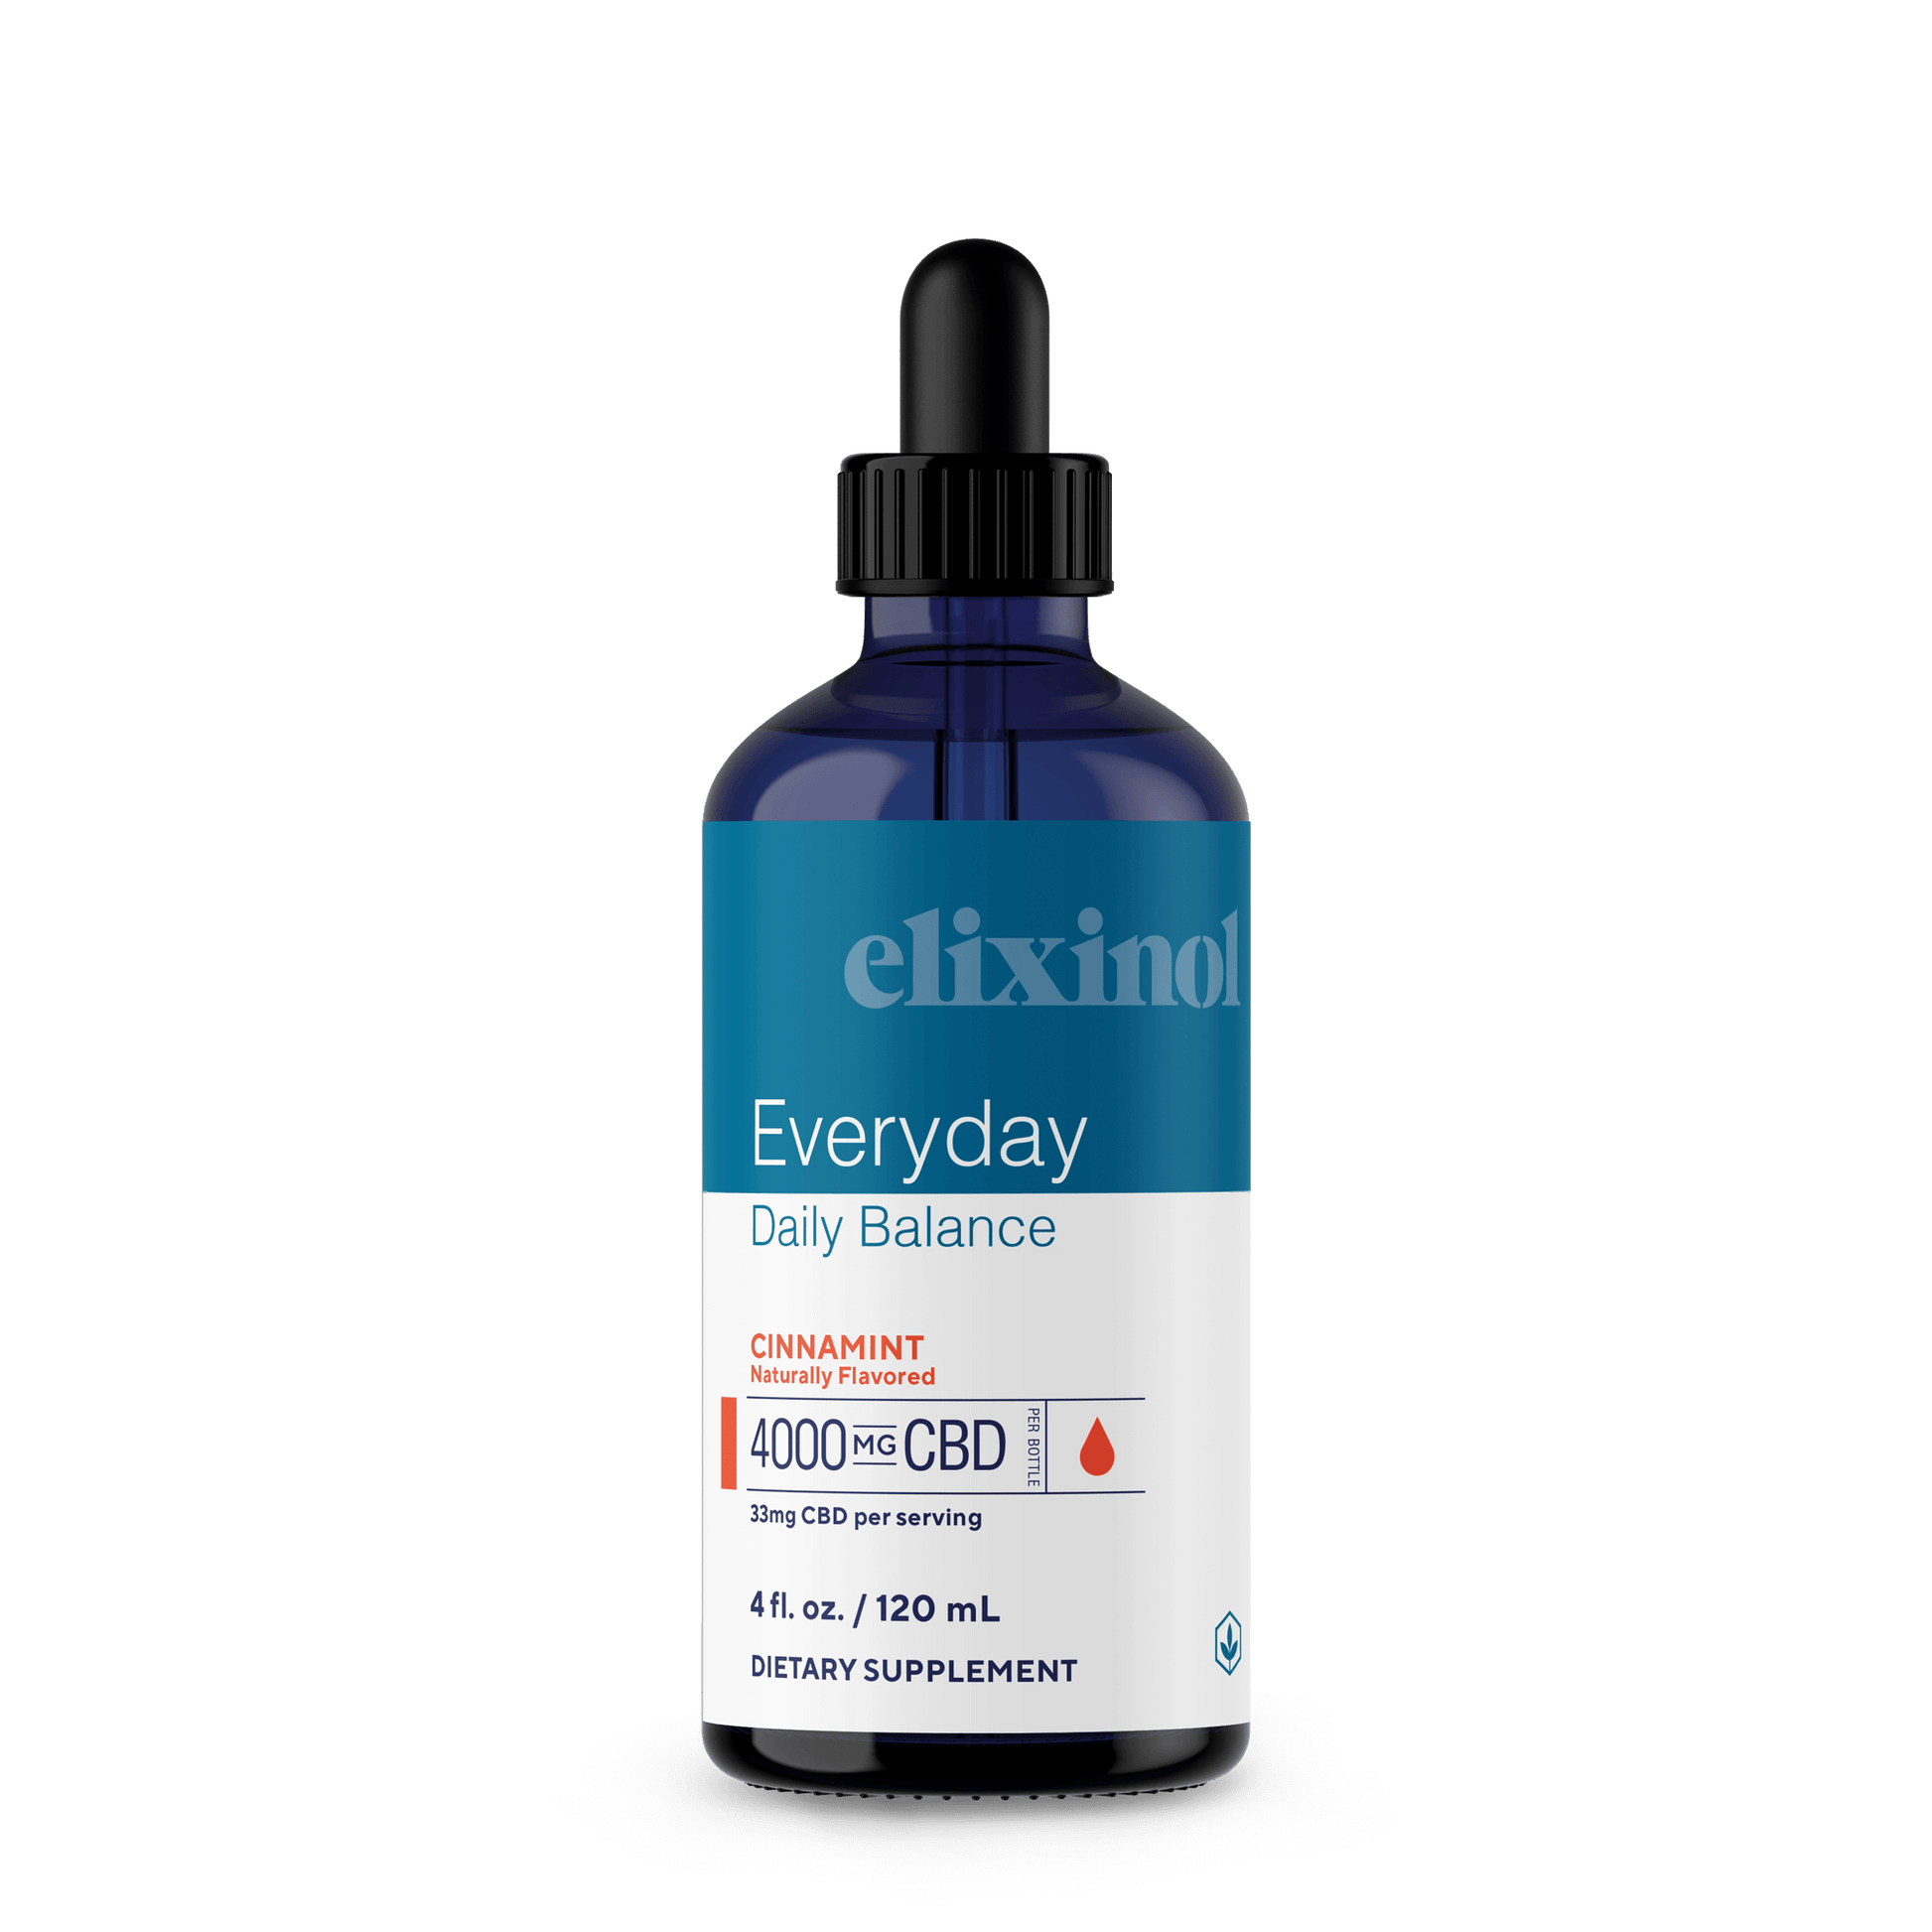 Elixinol Full Spectrum Tincture - Cinnamint (a Tincture) made by Elixinol sold at CBD Emporium